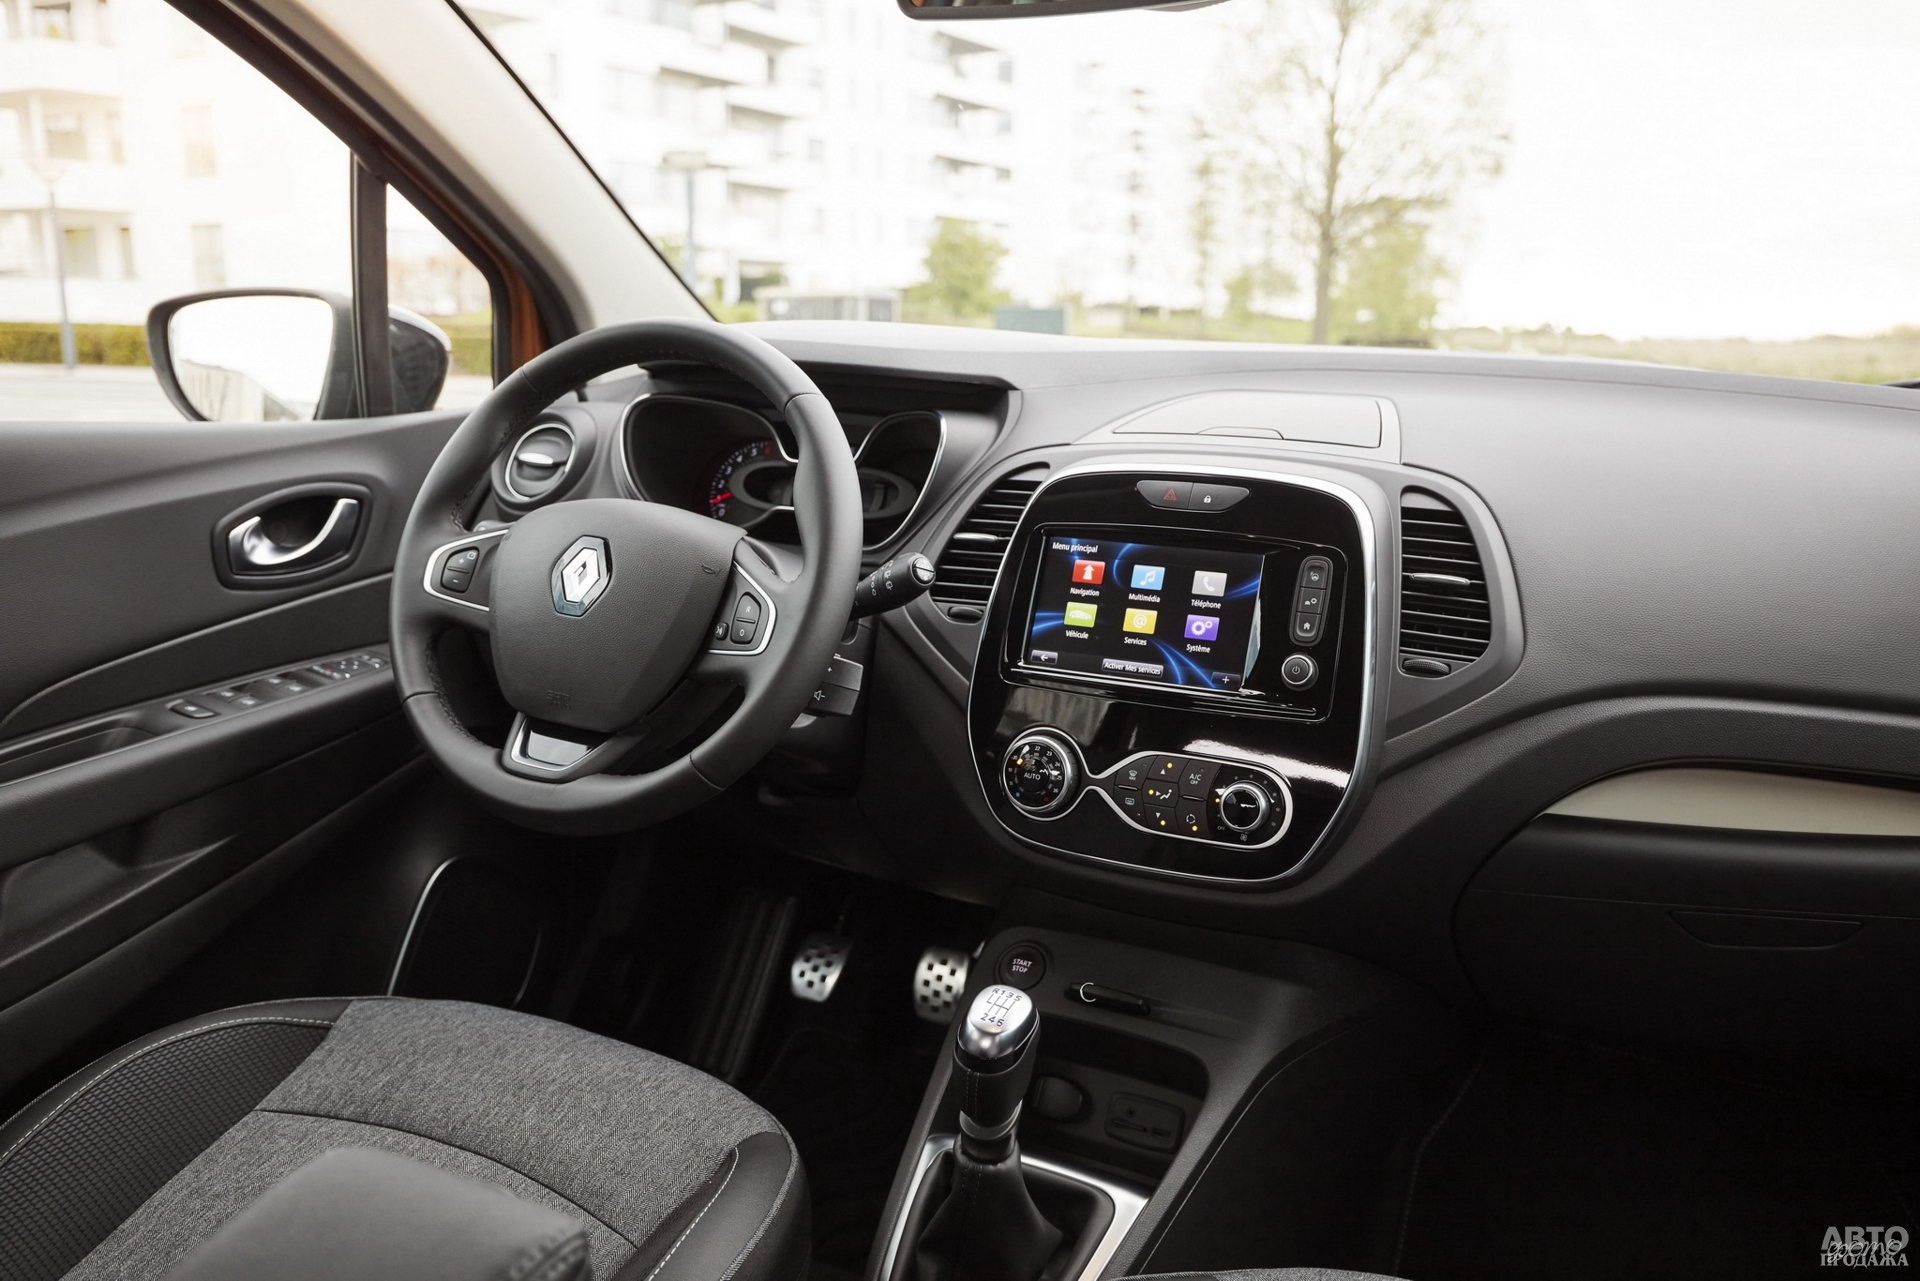 Цифровой спидометр Renault сочетается с аналоговым тахометром